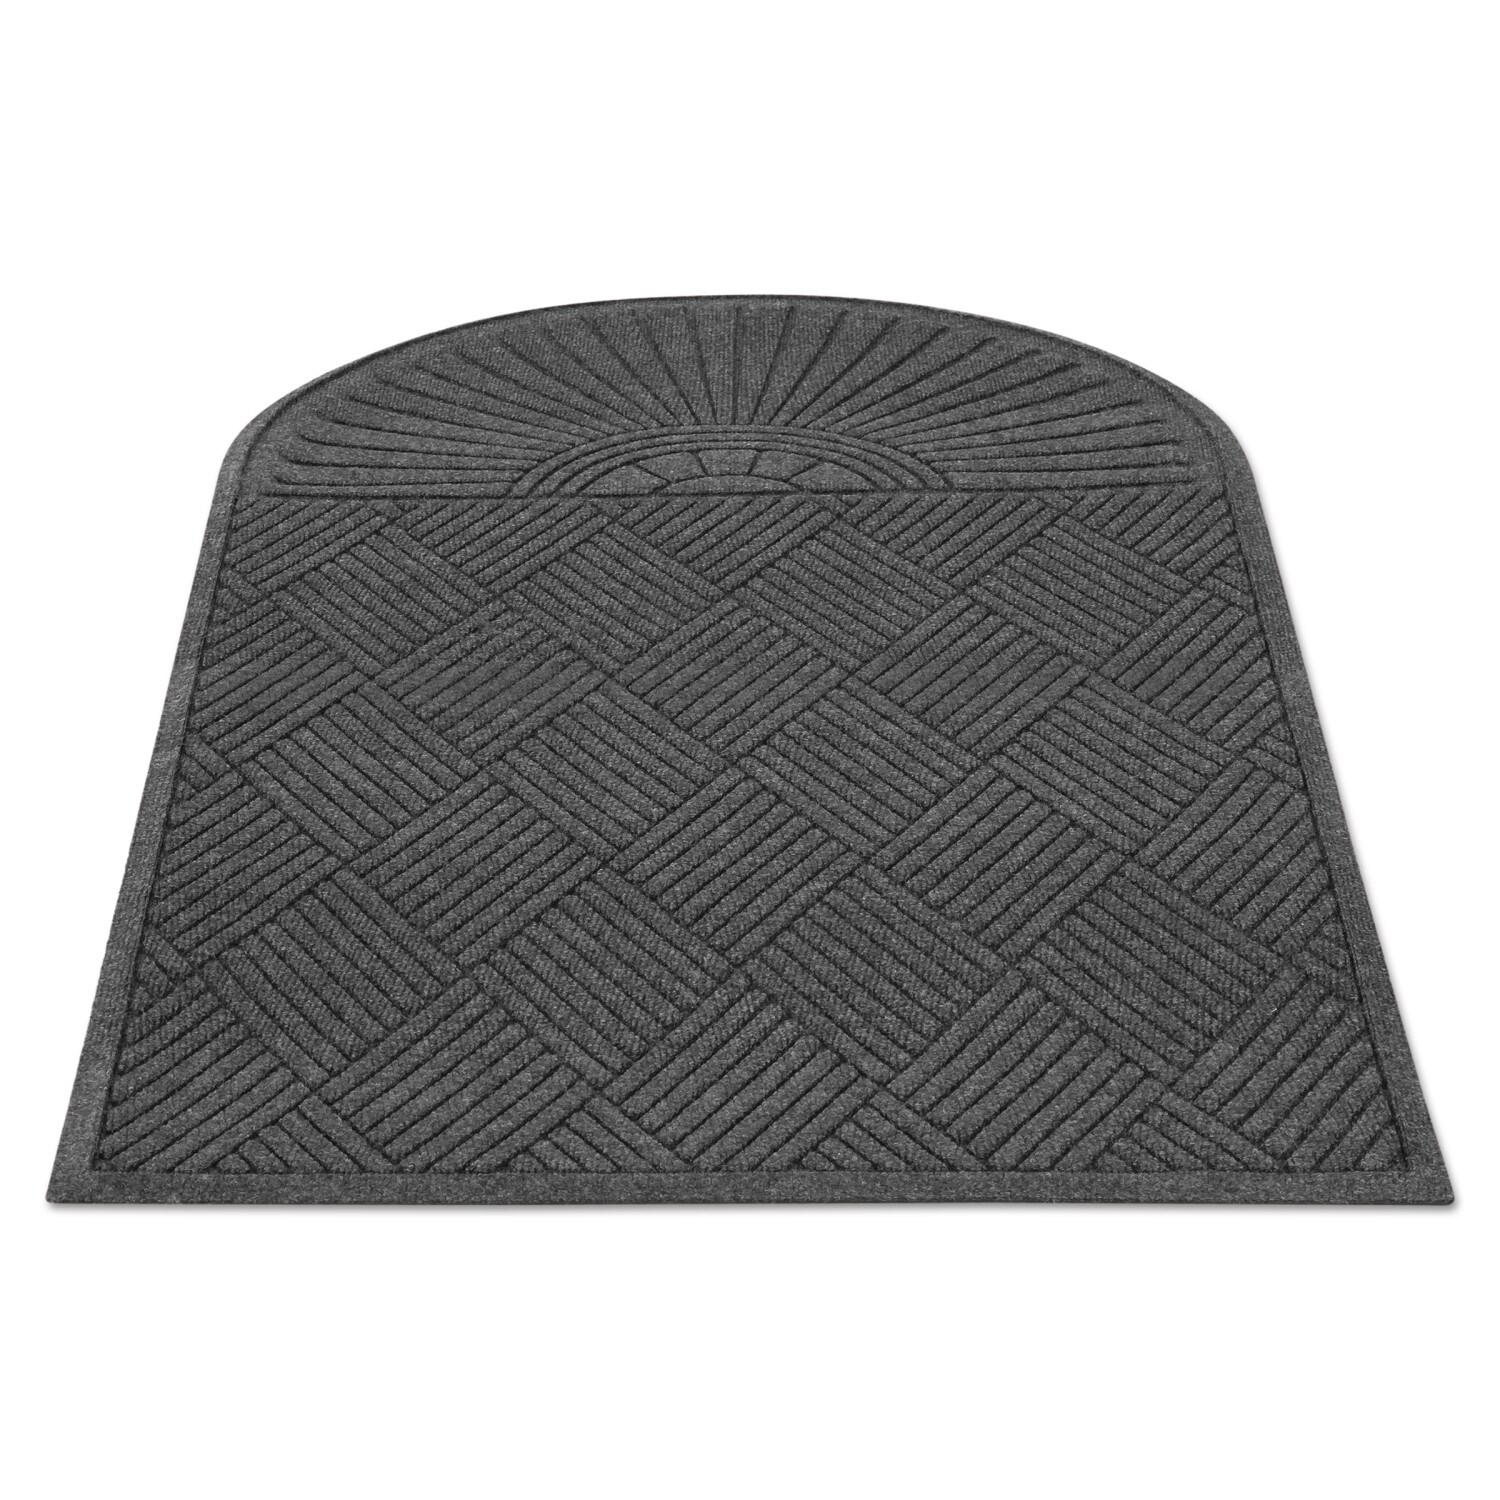 Guardian EcoGuard Diamond Floor Mat Rectangular 36 x 48 Charcoal